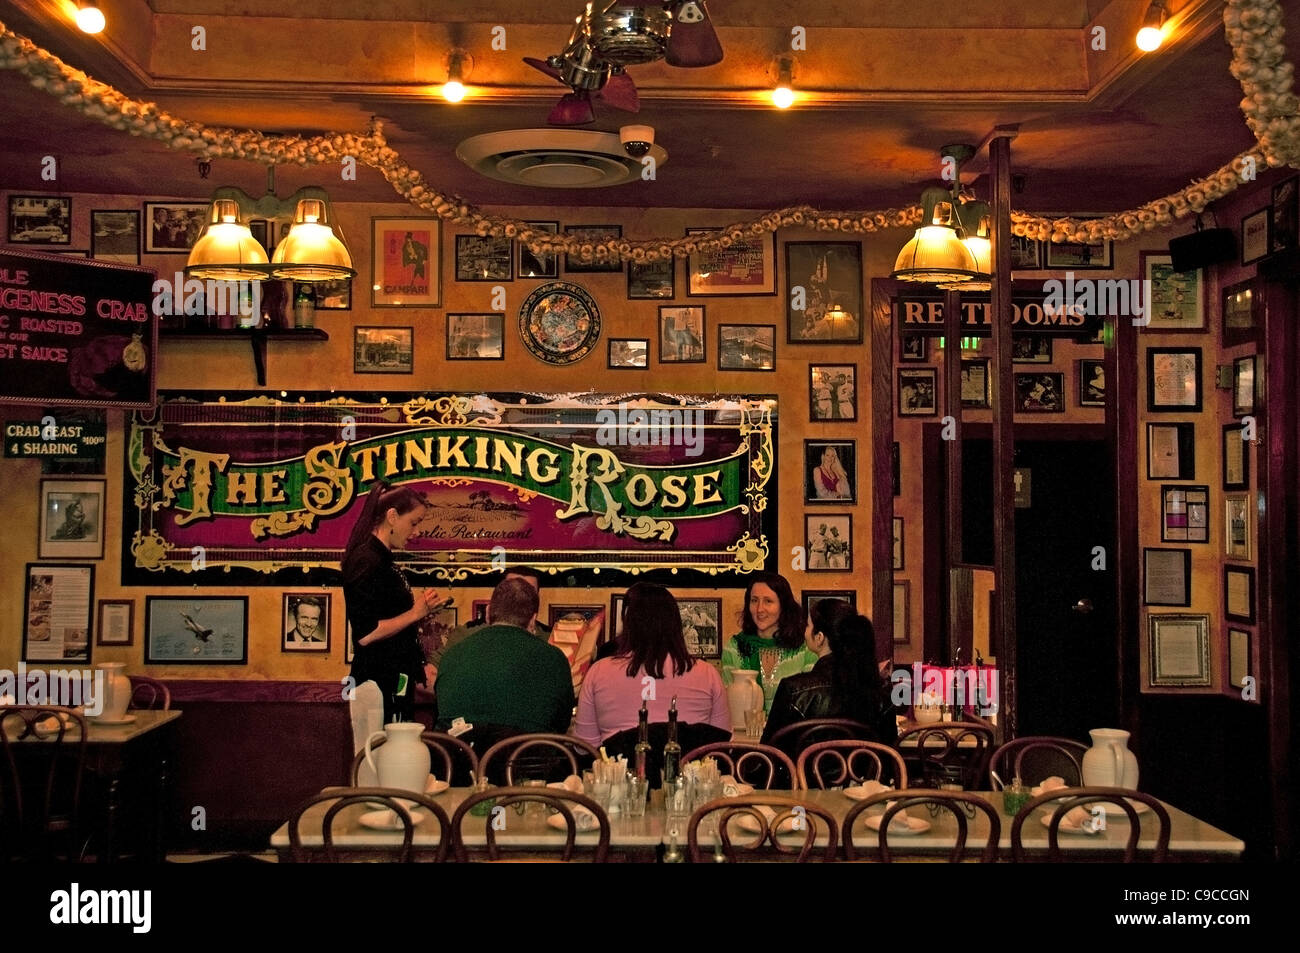 Die stinkende rose Knoblauch Restaurant Bar wenig Italien North Beach San Francisco Kalifornien Vereinigte Staaten Stockfoto